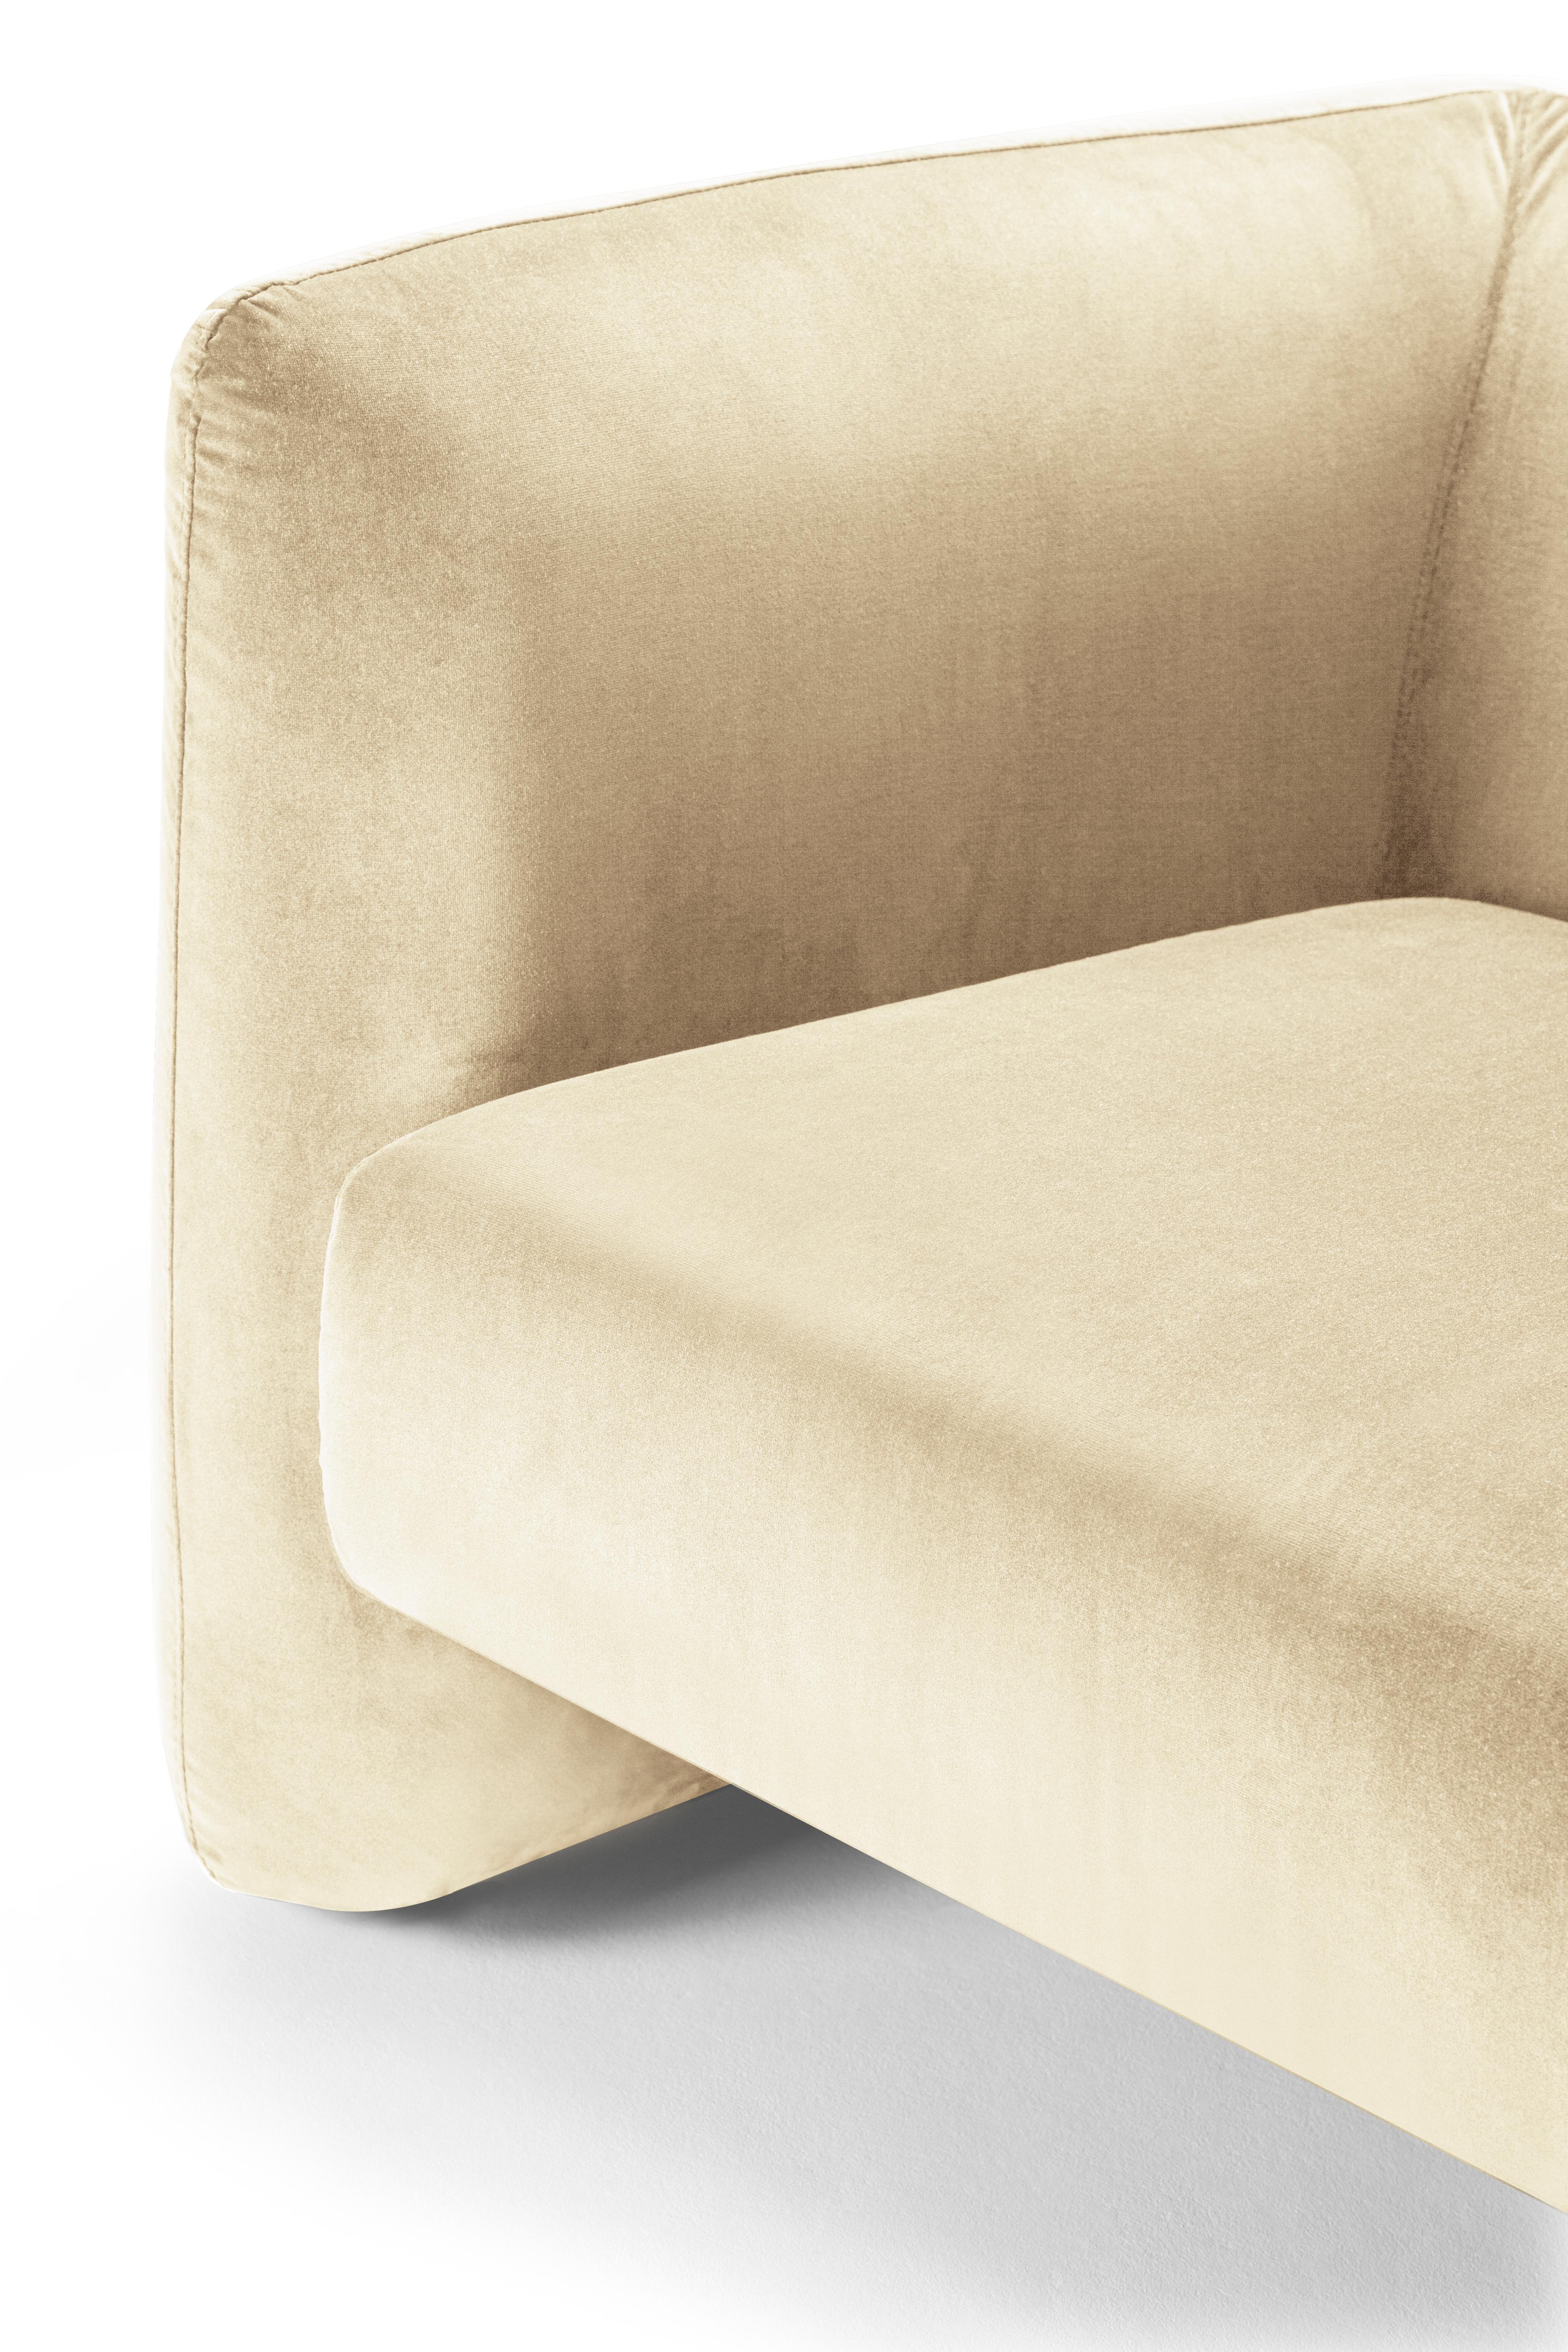 Moderner Jacob Sessel mit beigefarbenem Samtbezug von Collector Studio

Dieser witzige und raffinierte Sessel des 21. Jahrhunderts, der von Collector Studio entworfen wurde, ist durch seine einfache Form und sein attraktives Farbspiel zusammen mit